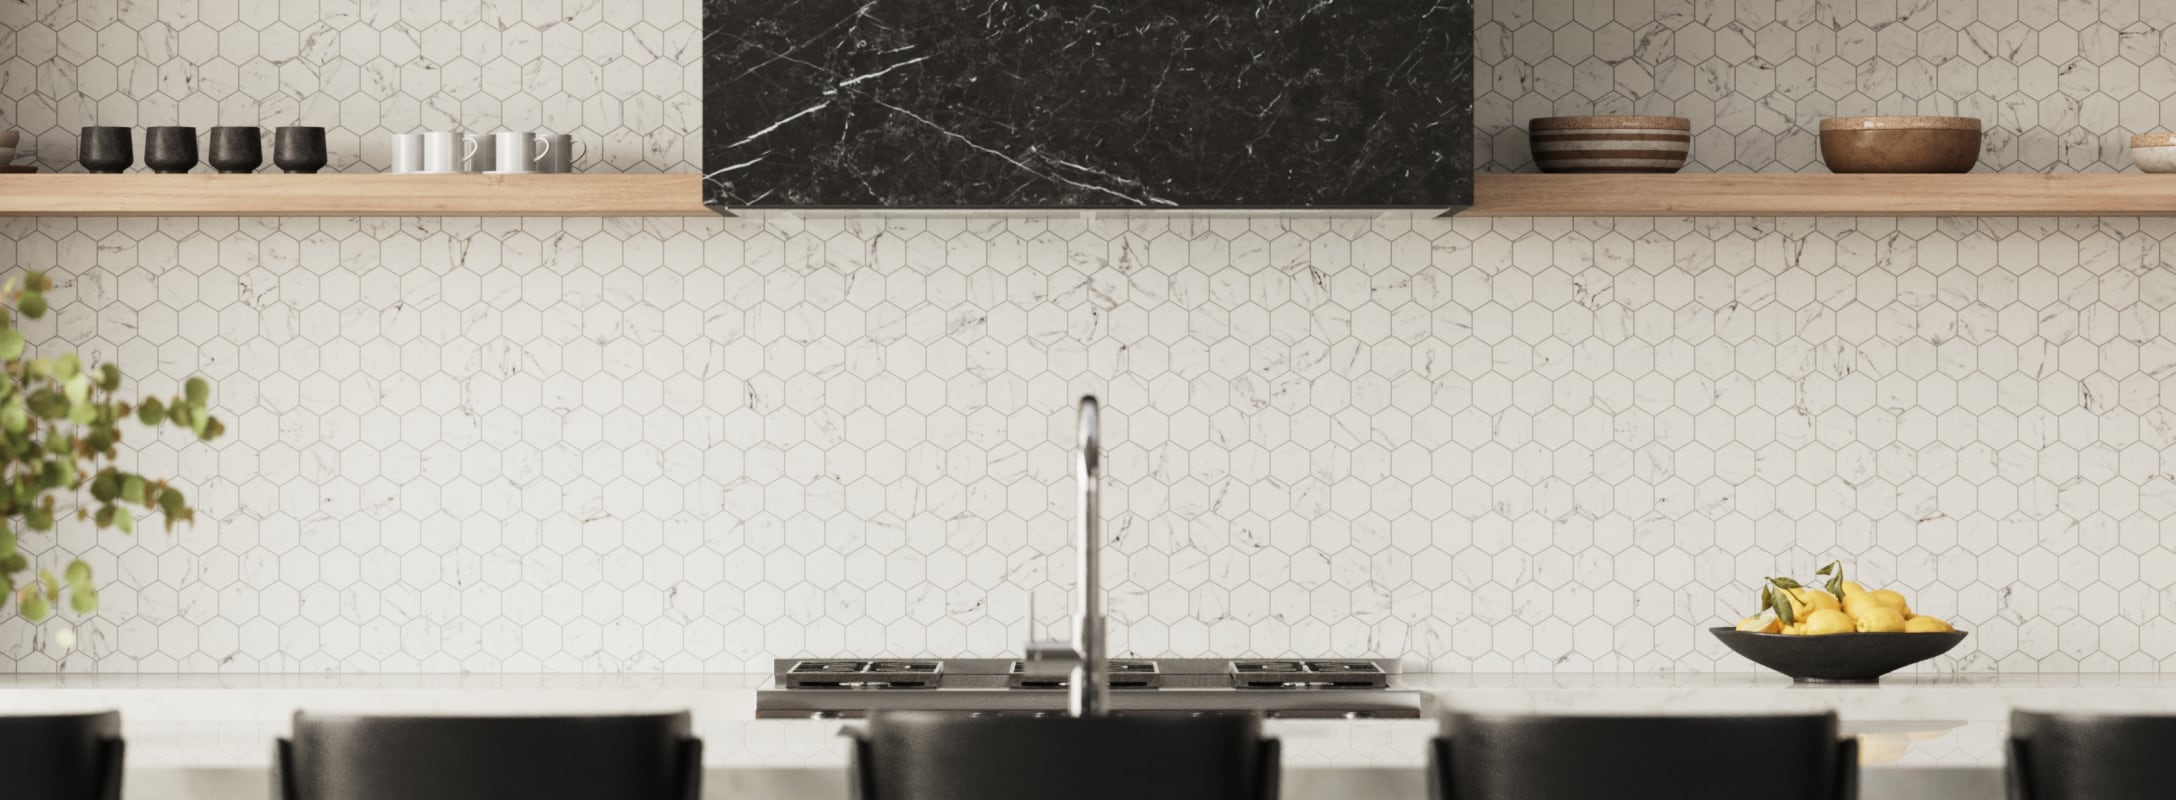 White Kitchen Backsplash Tiles provide a pristine, elegant finish, enhancing the kitchen's charm and style.